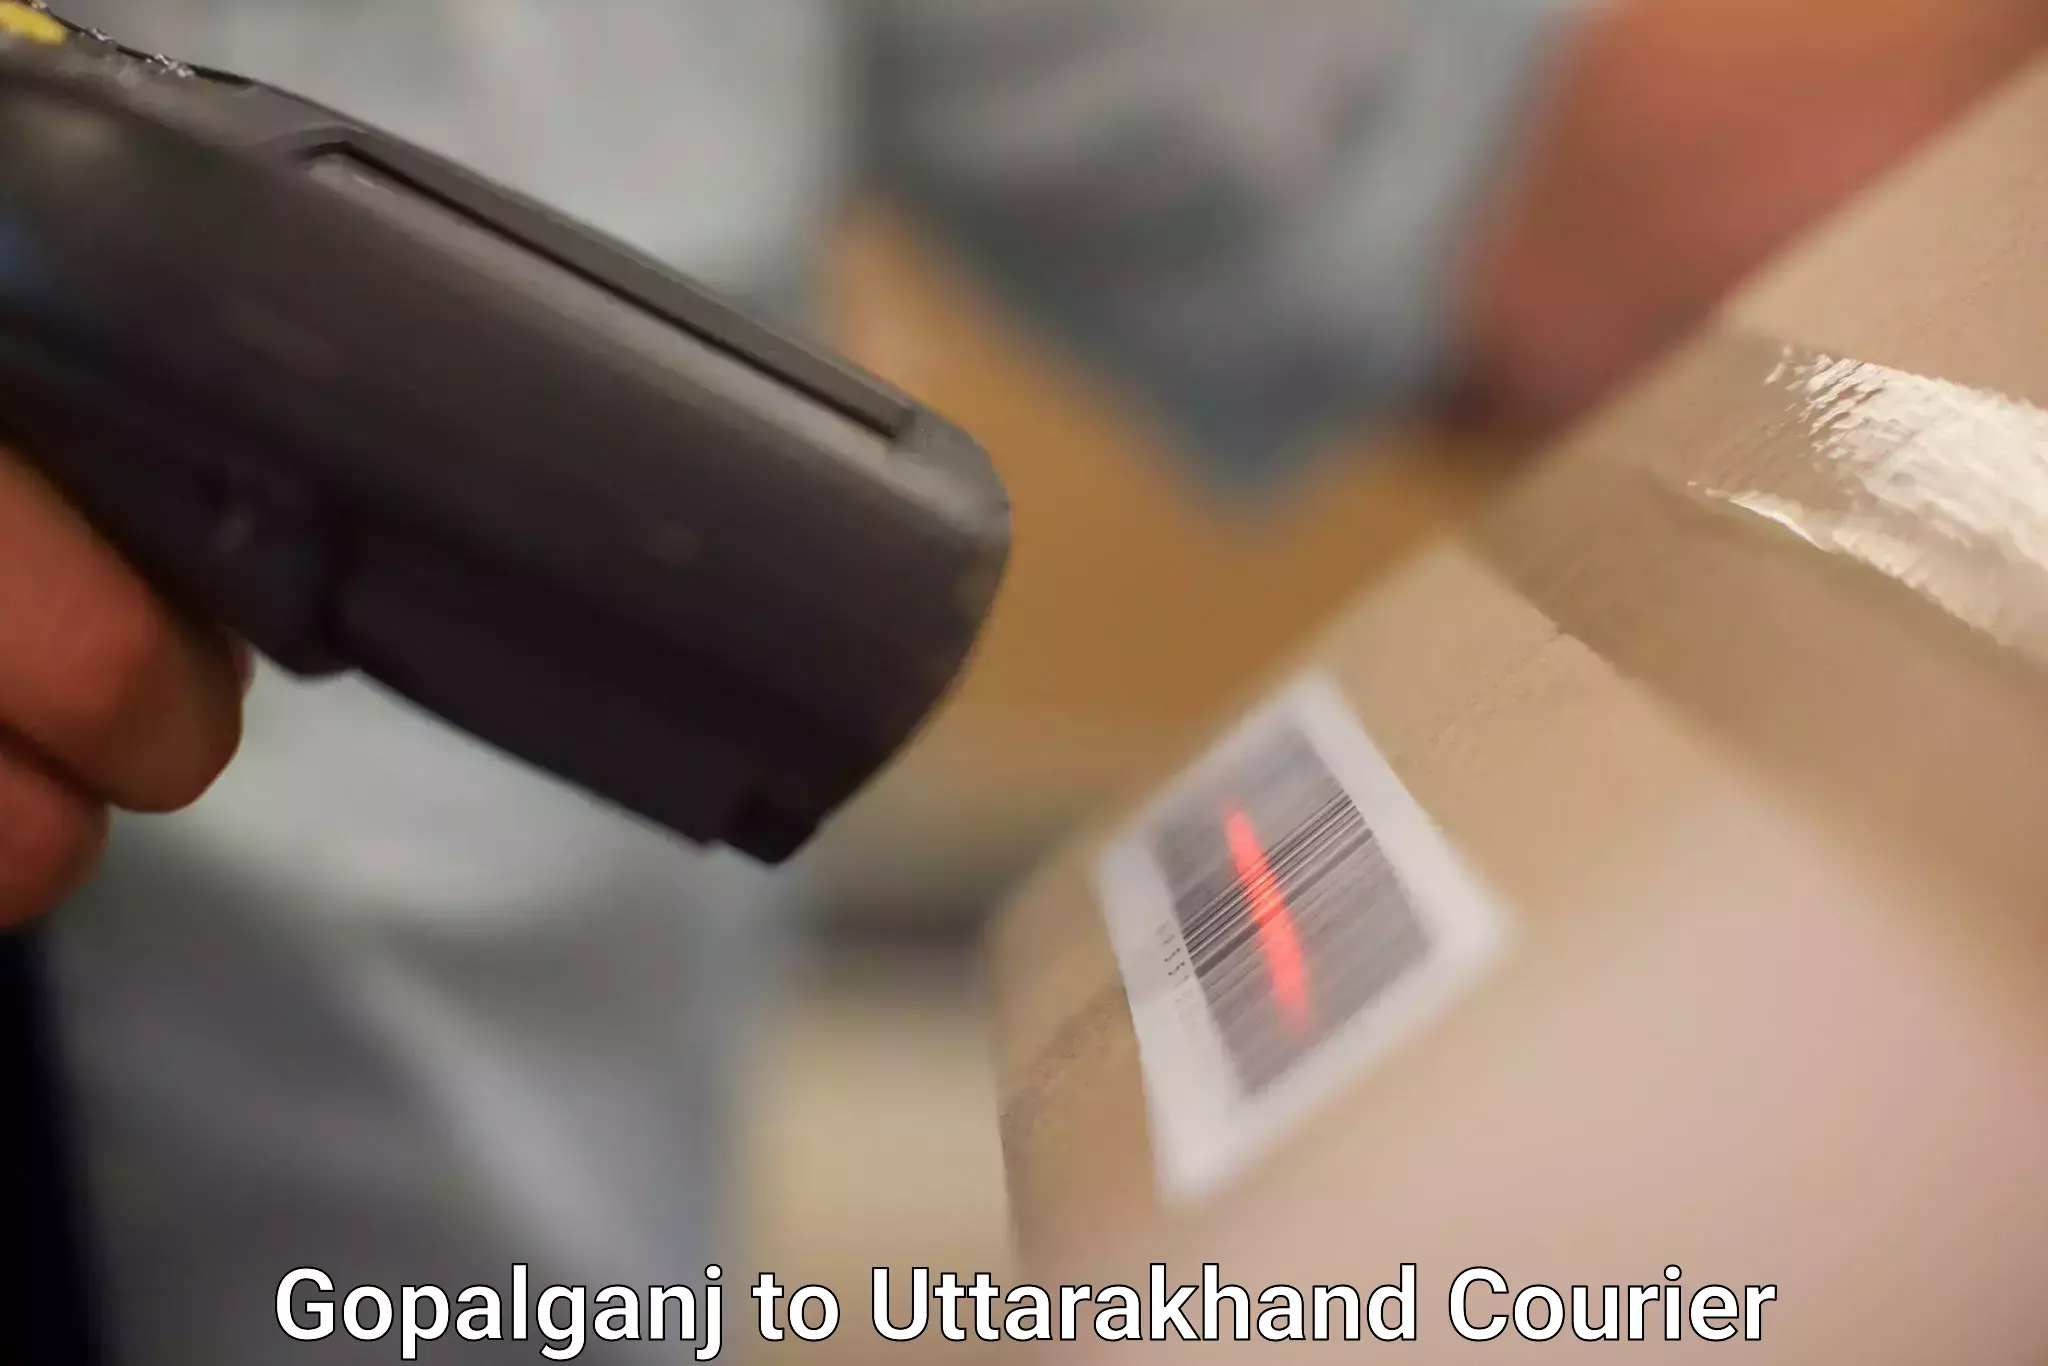 Global parcel delivery Gopalganj to Tehri